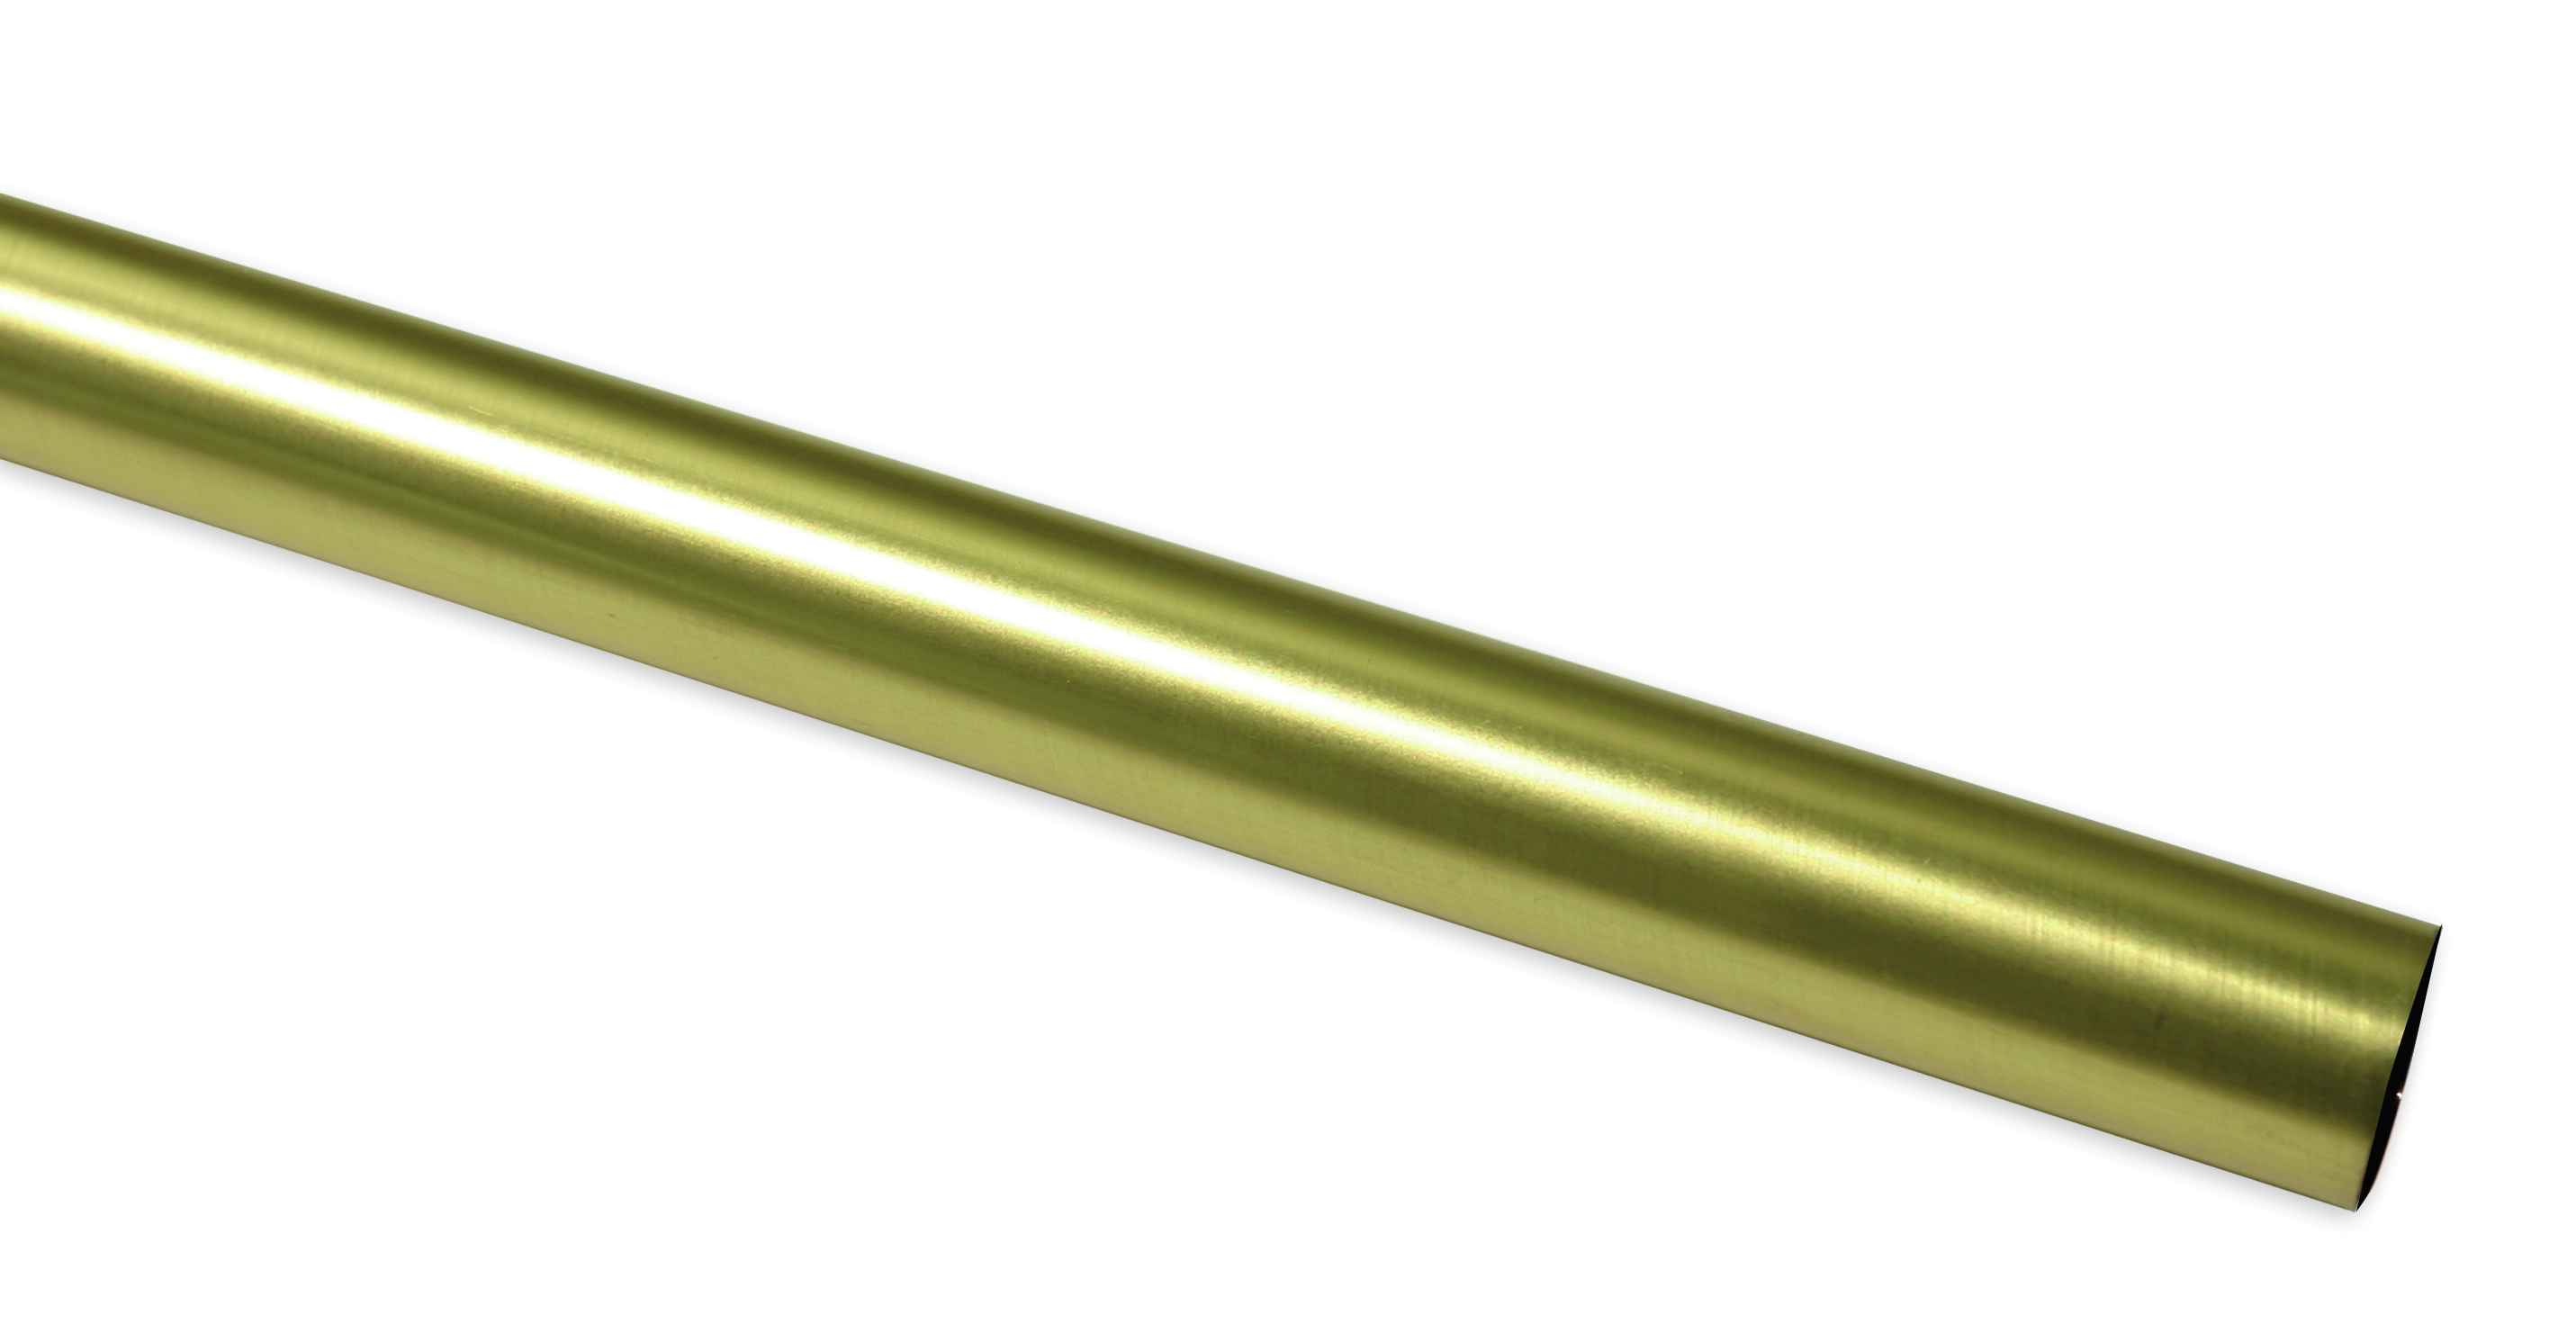 Záclonová tyč Europa 19/160cm, zlatá antika (Kov, od délky tyče 200cm doporučujeme použít třetí nosník.)